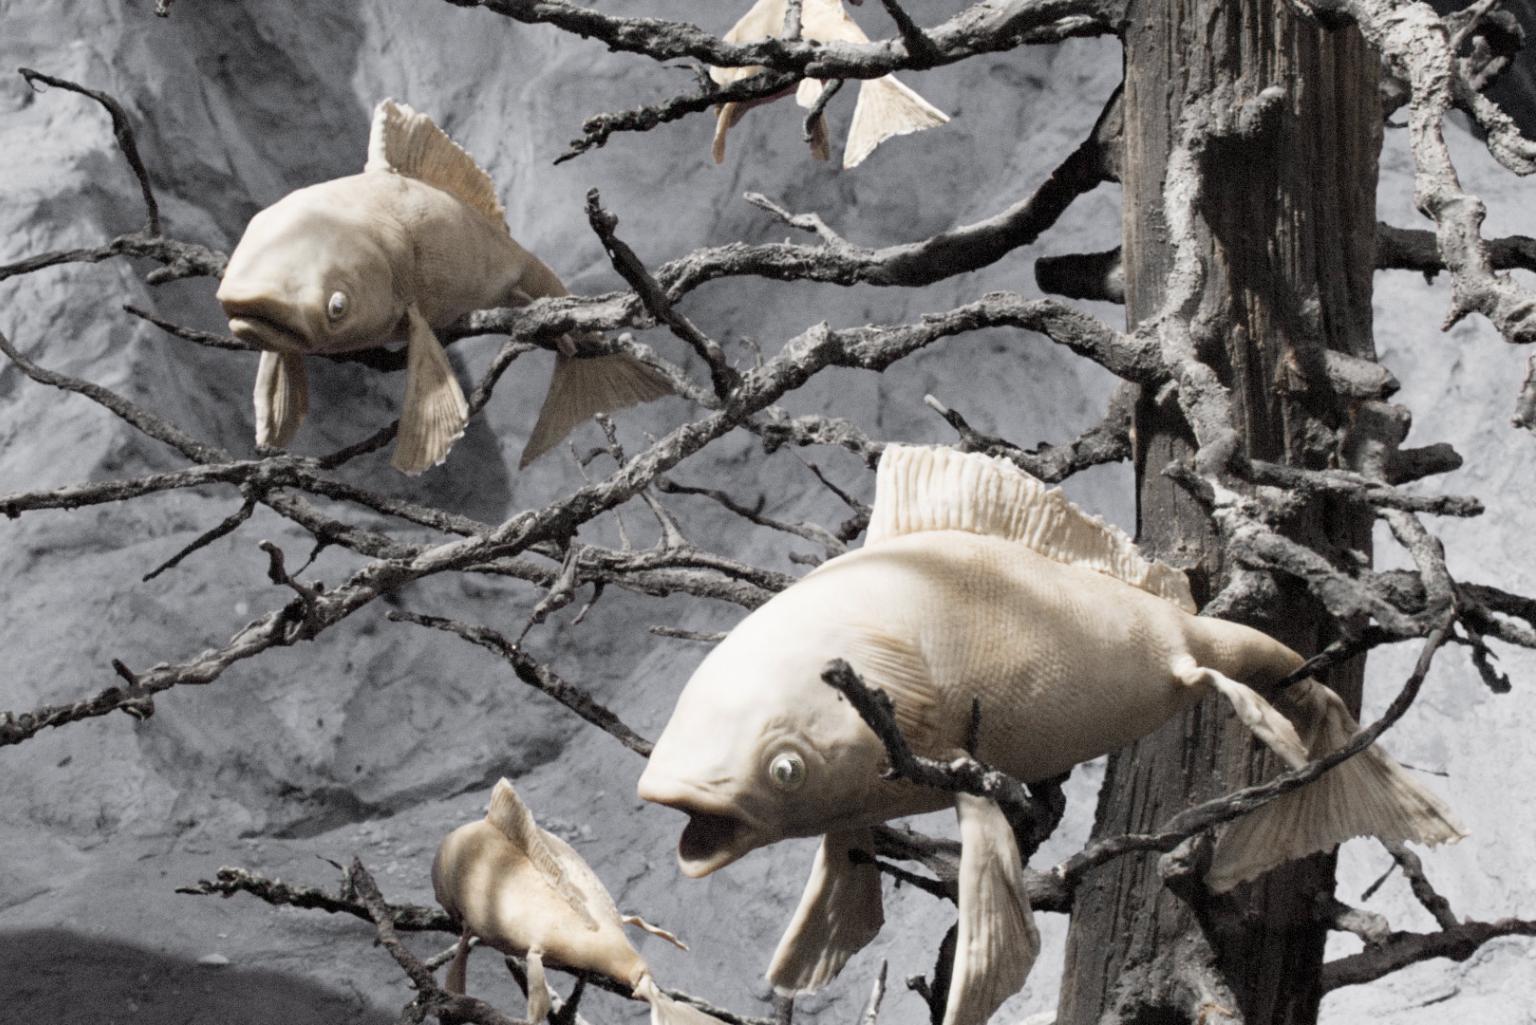 Ein Bild von weißlichen Fischen mit offenen Mäulern, die in den Ästen eines verdorrten Baumes hängen, es wirkt sehr trostlos